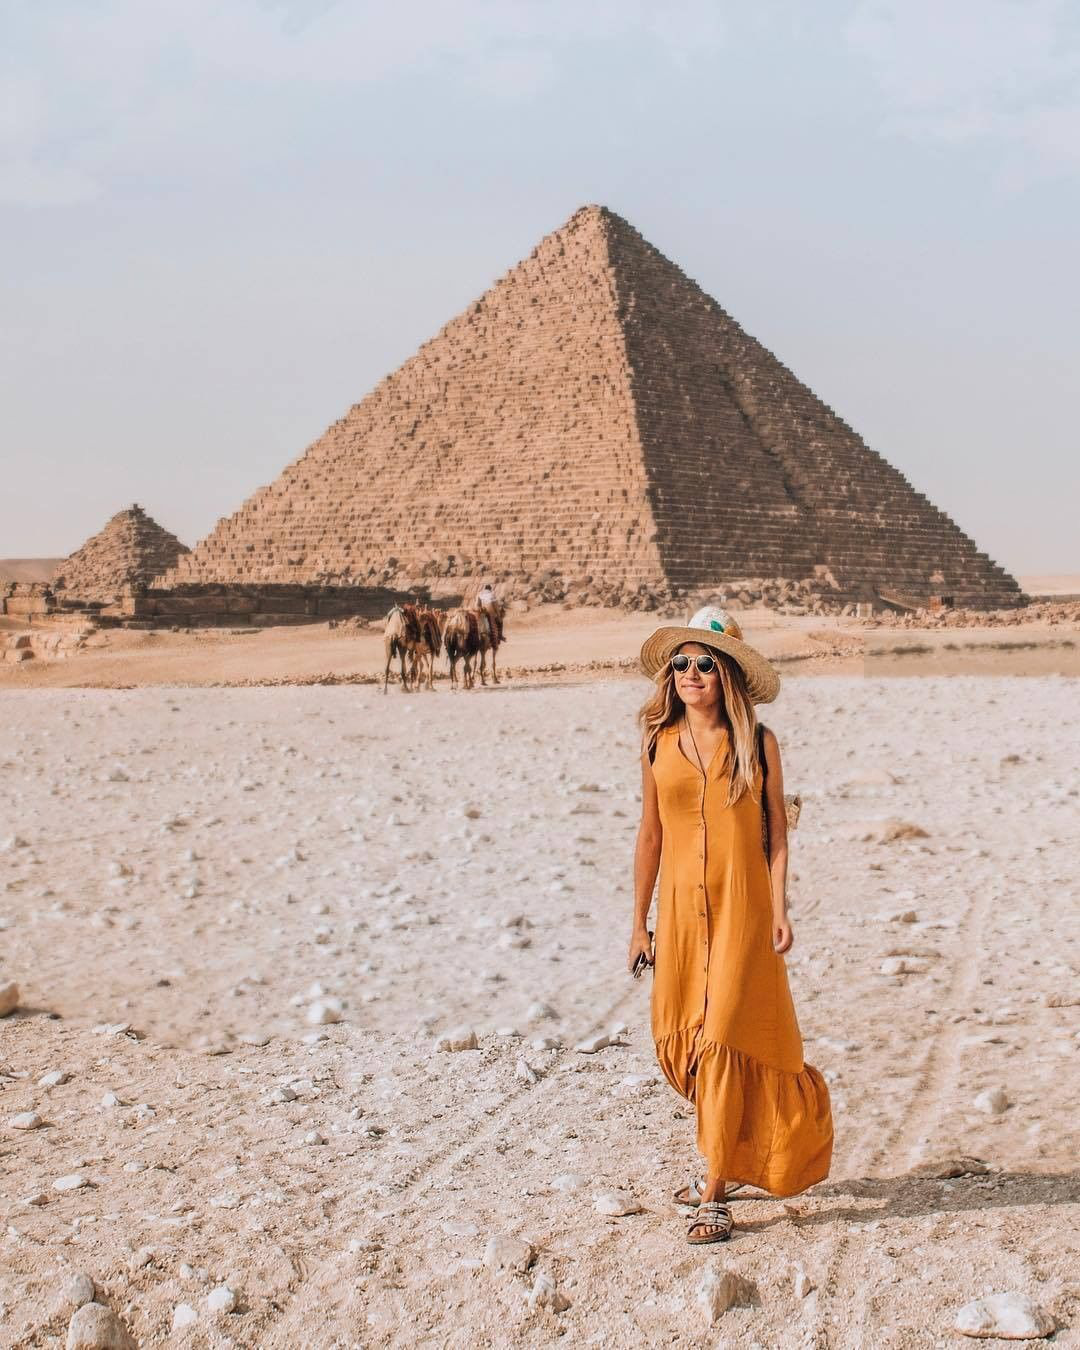 Hãy xem hình ảnh về Kim tự tháp Ai Cập để khám phá sự tuyệt vời của một công trình kiến trúc đỉnh cao của nền văn minh cổ đại. Với kích thước và độ phức tạp của nó, Kim tự tháp chắc chắn sẽ khiến bạn cảm thấy ngỡ ngàng và thích thú.